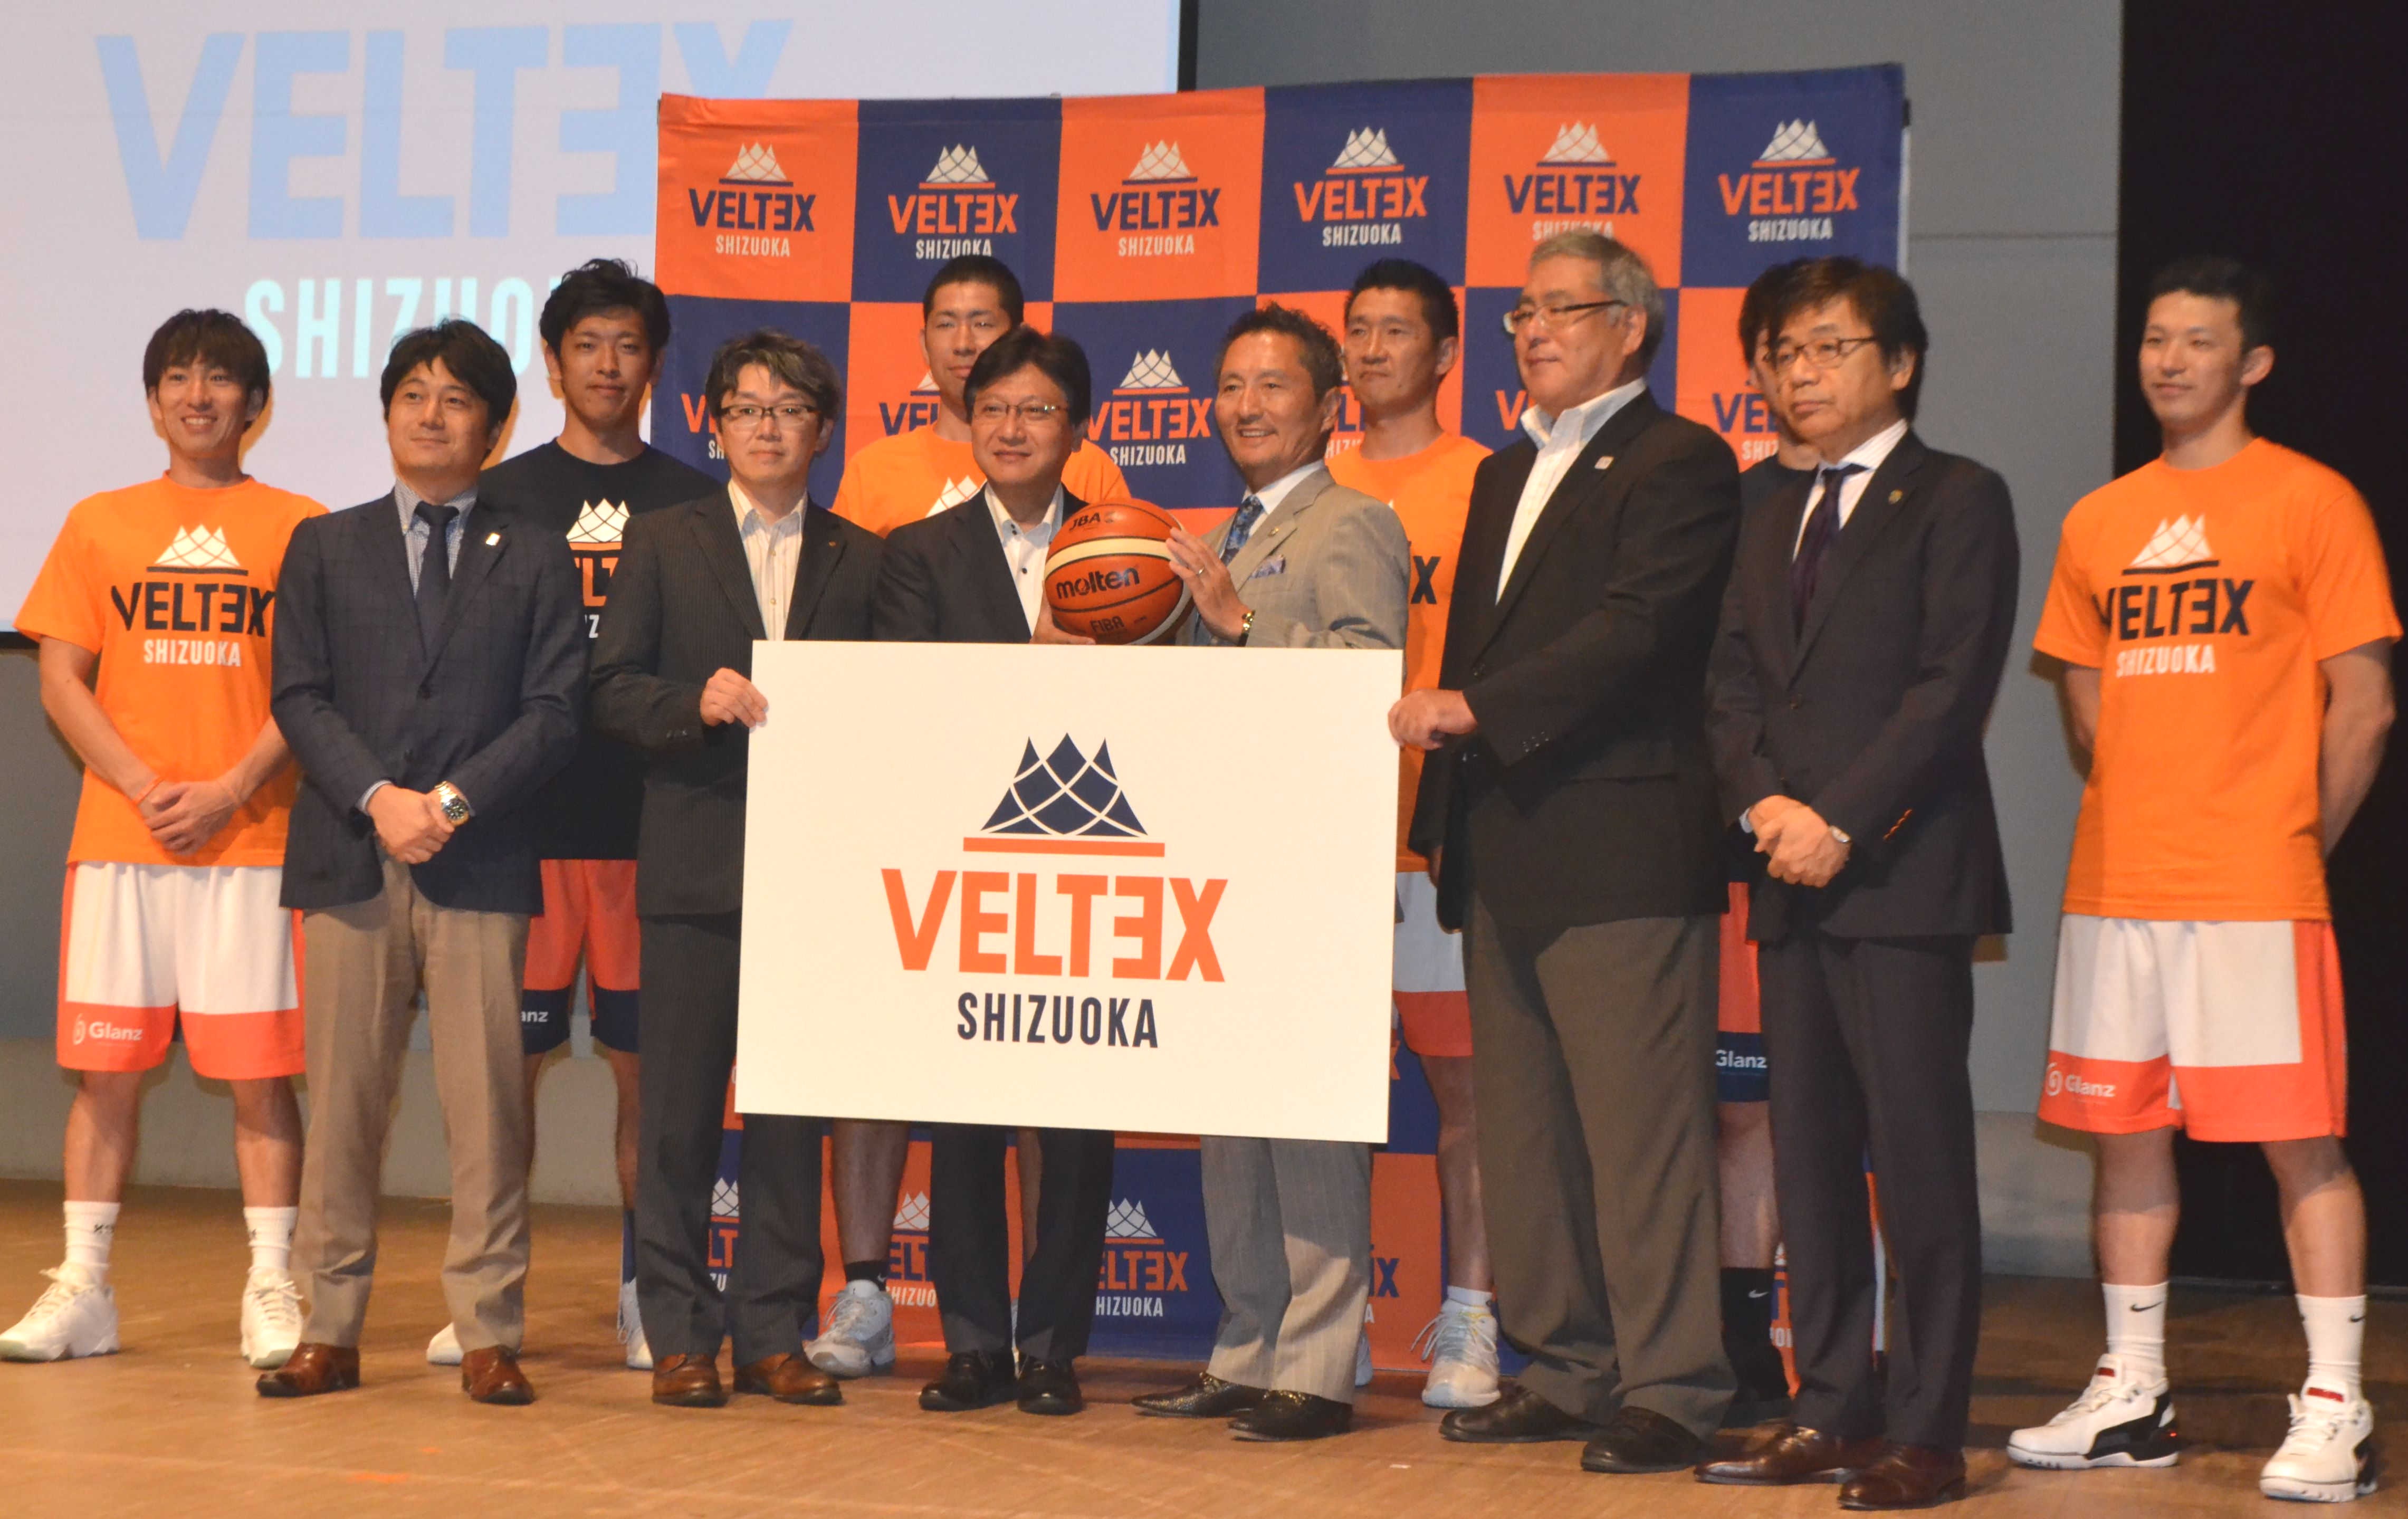 新チーム名「ヴェルテックス」を発表した新クラブ発足式＝静岡市内